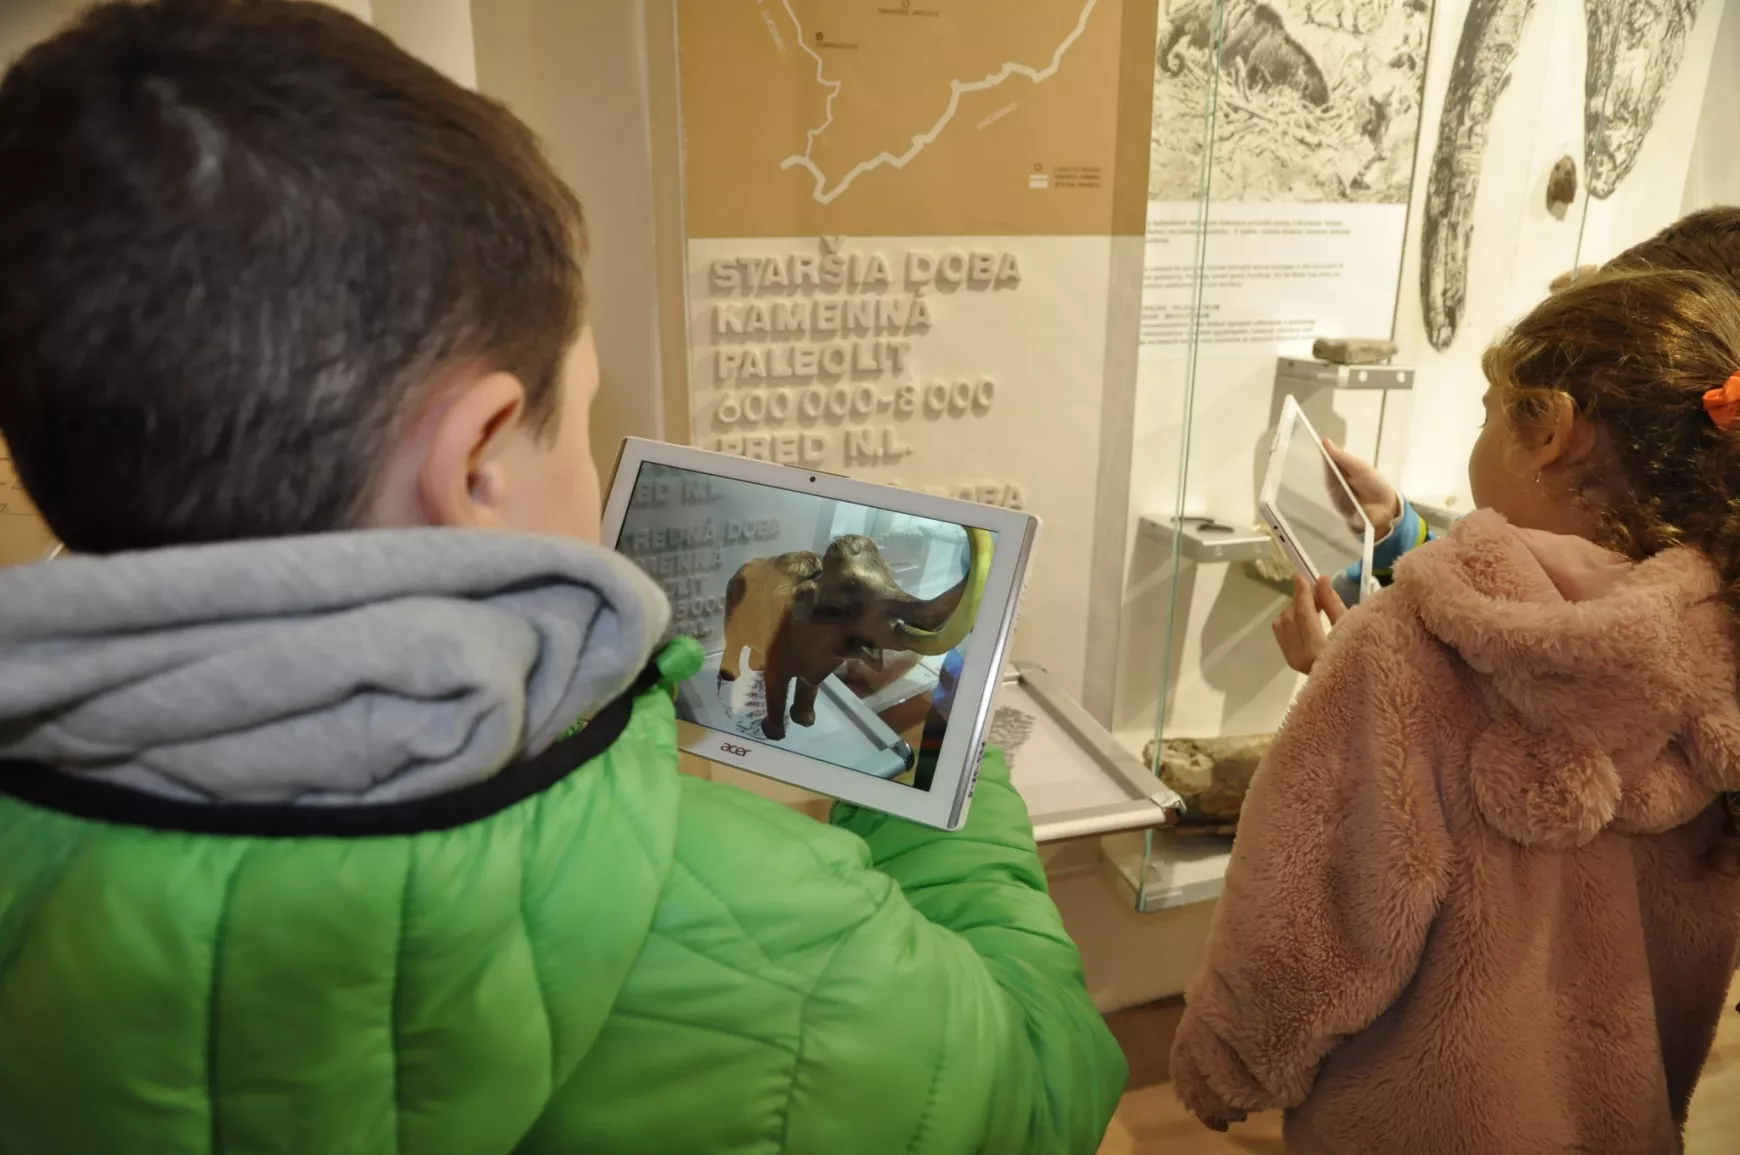 Virtuális tárlatvezetés a Gömör-Kishonti Múzeumban